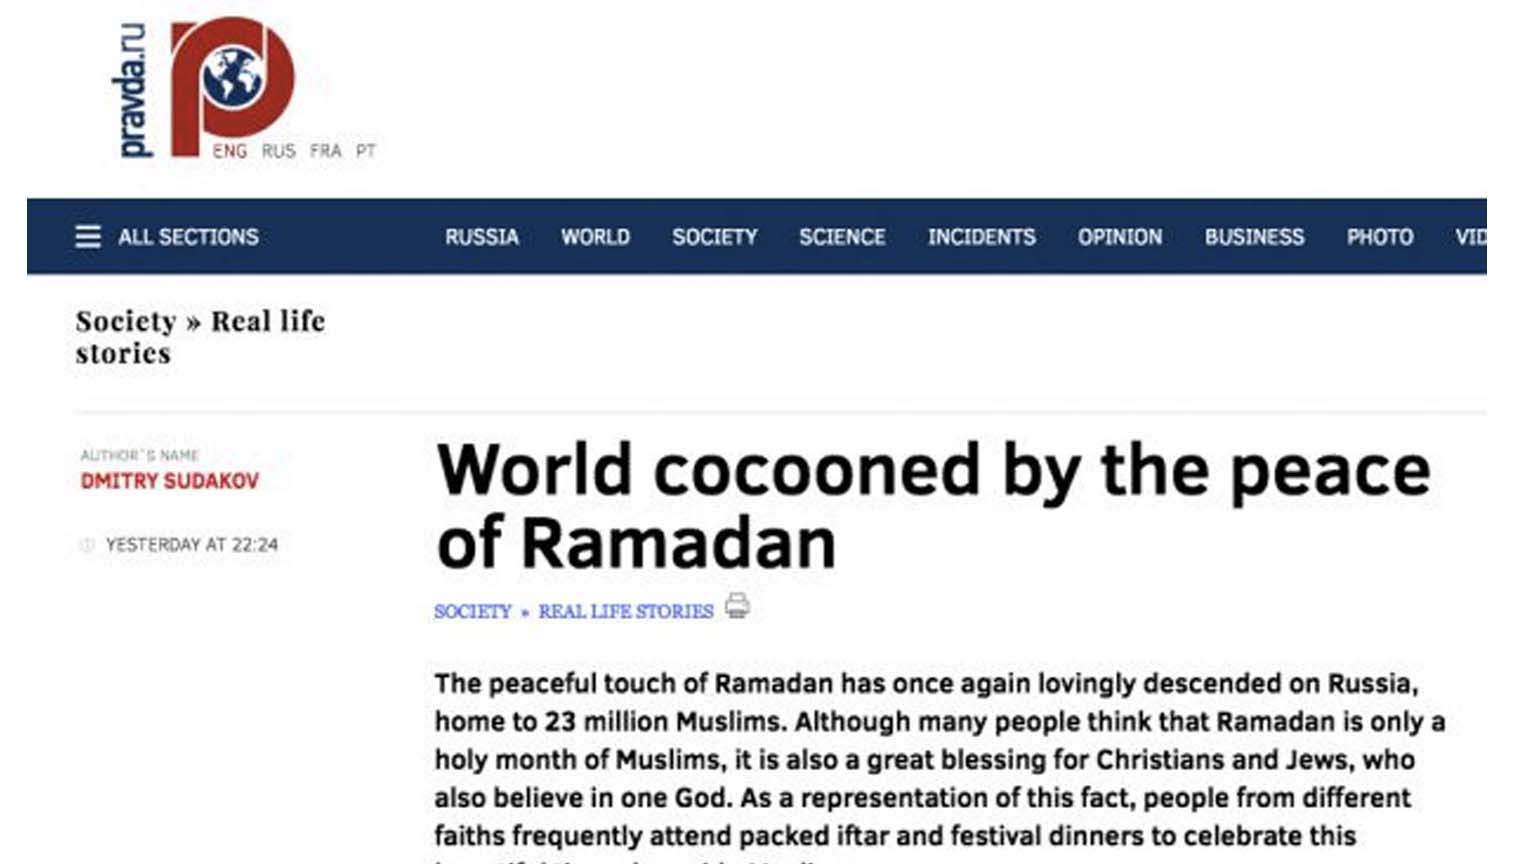 Huzurlu Ramazan atmosferi dünyayı sararken